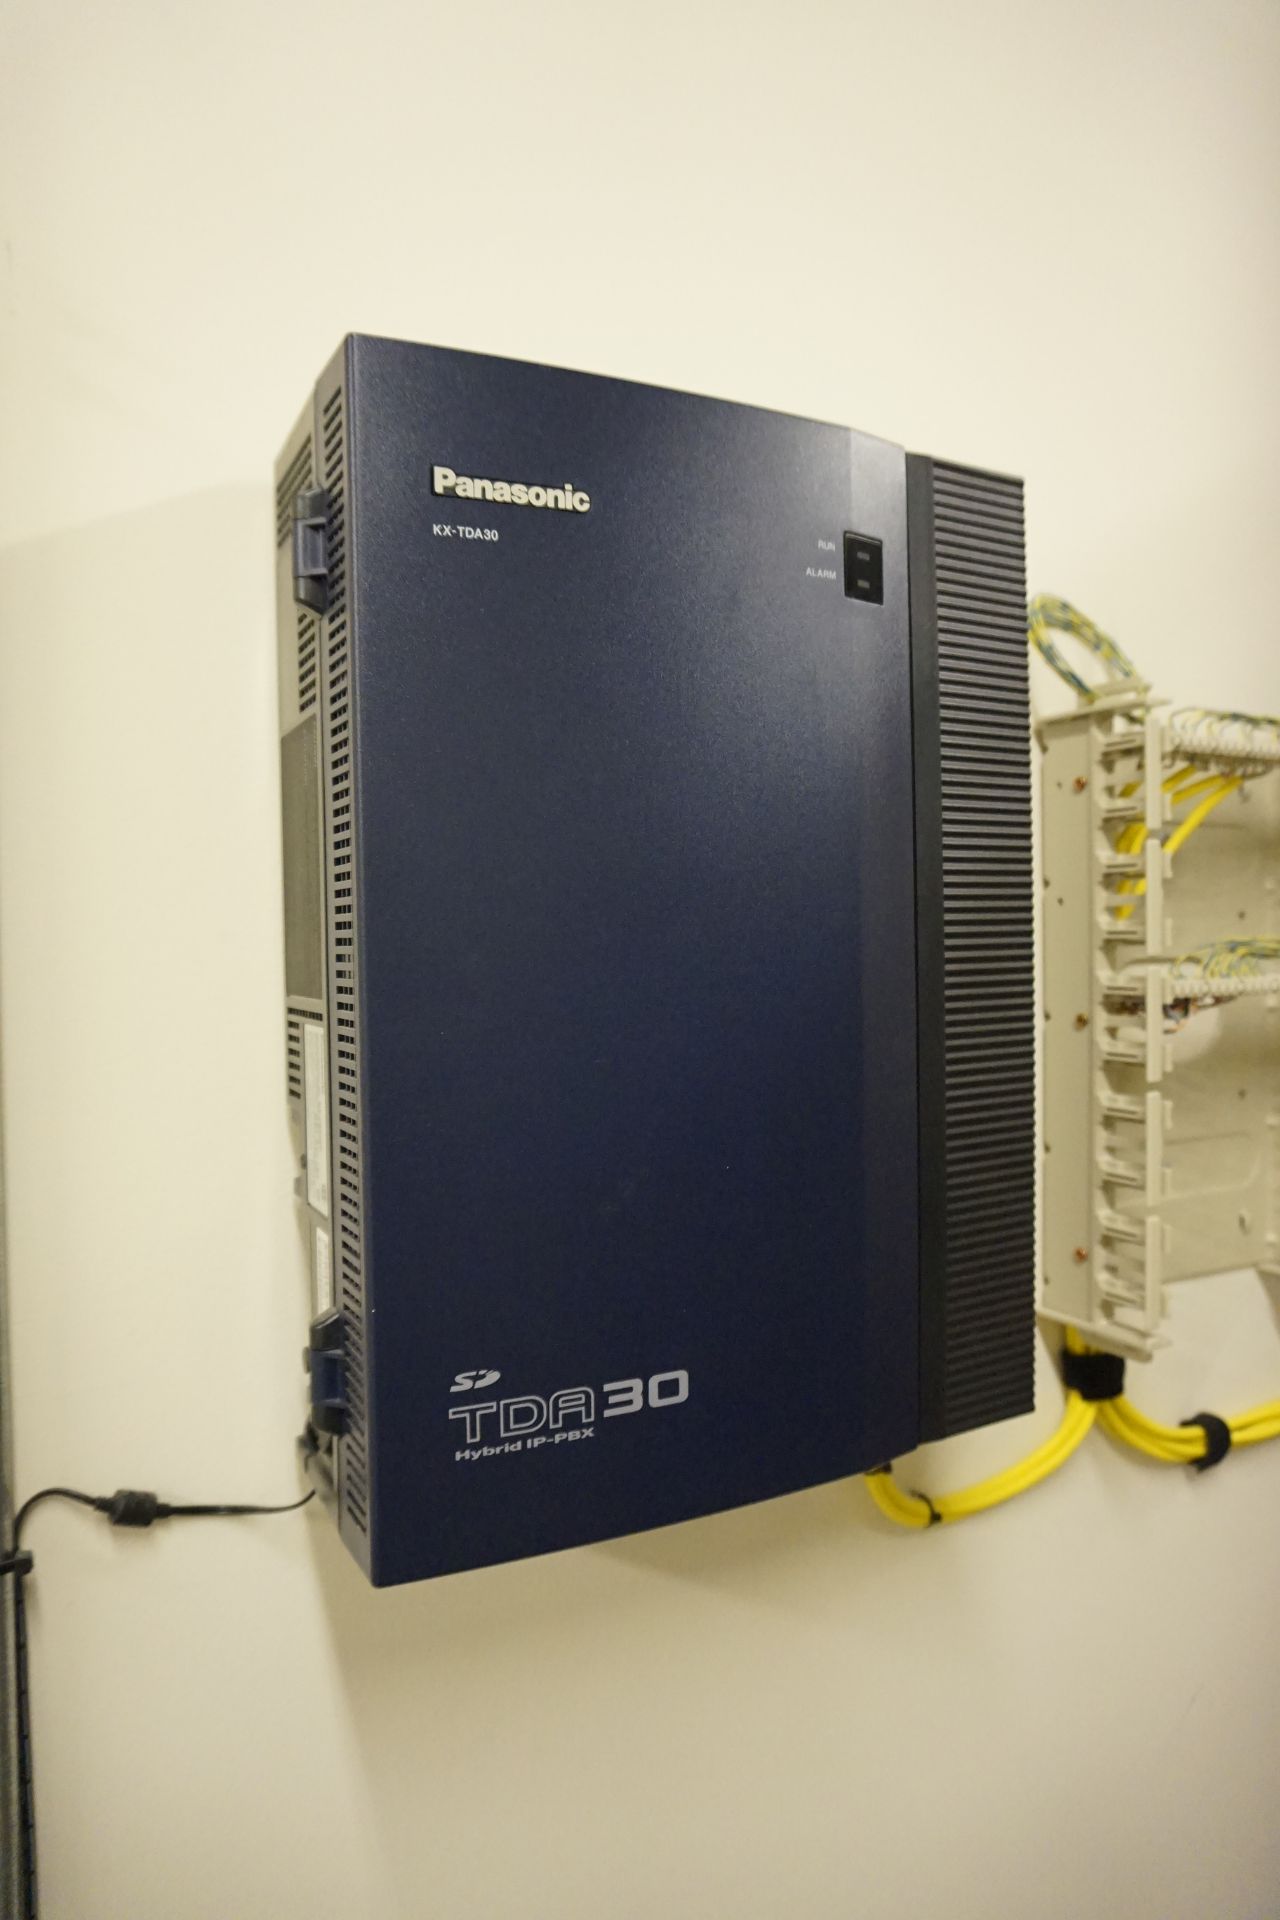 Panasonic Model KX-TDA30 Hybrid IP-PBX Telephone System